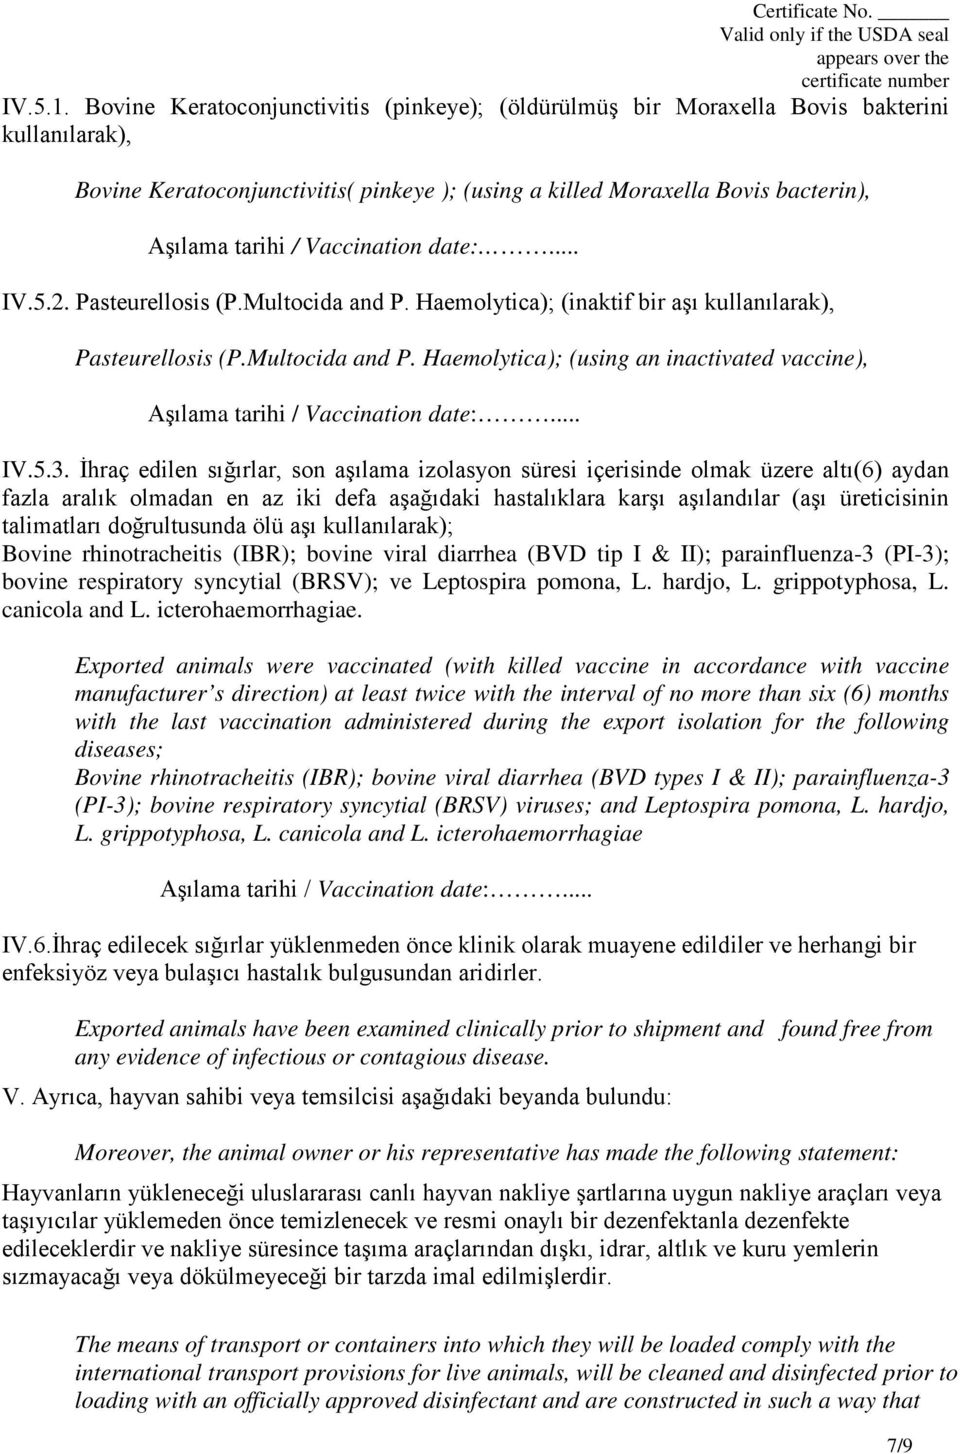 Vaccination date:... IV.5.2. Pasteurellosis (P.Multocida and P. Haemolytica); (inaktif bir aşı kullanılarak), Pasteurellosis (P.Multocida and P. Haemolytica); (using an inactivated vaccine), Aşılama tarihi / Vaccination date:.